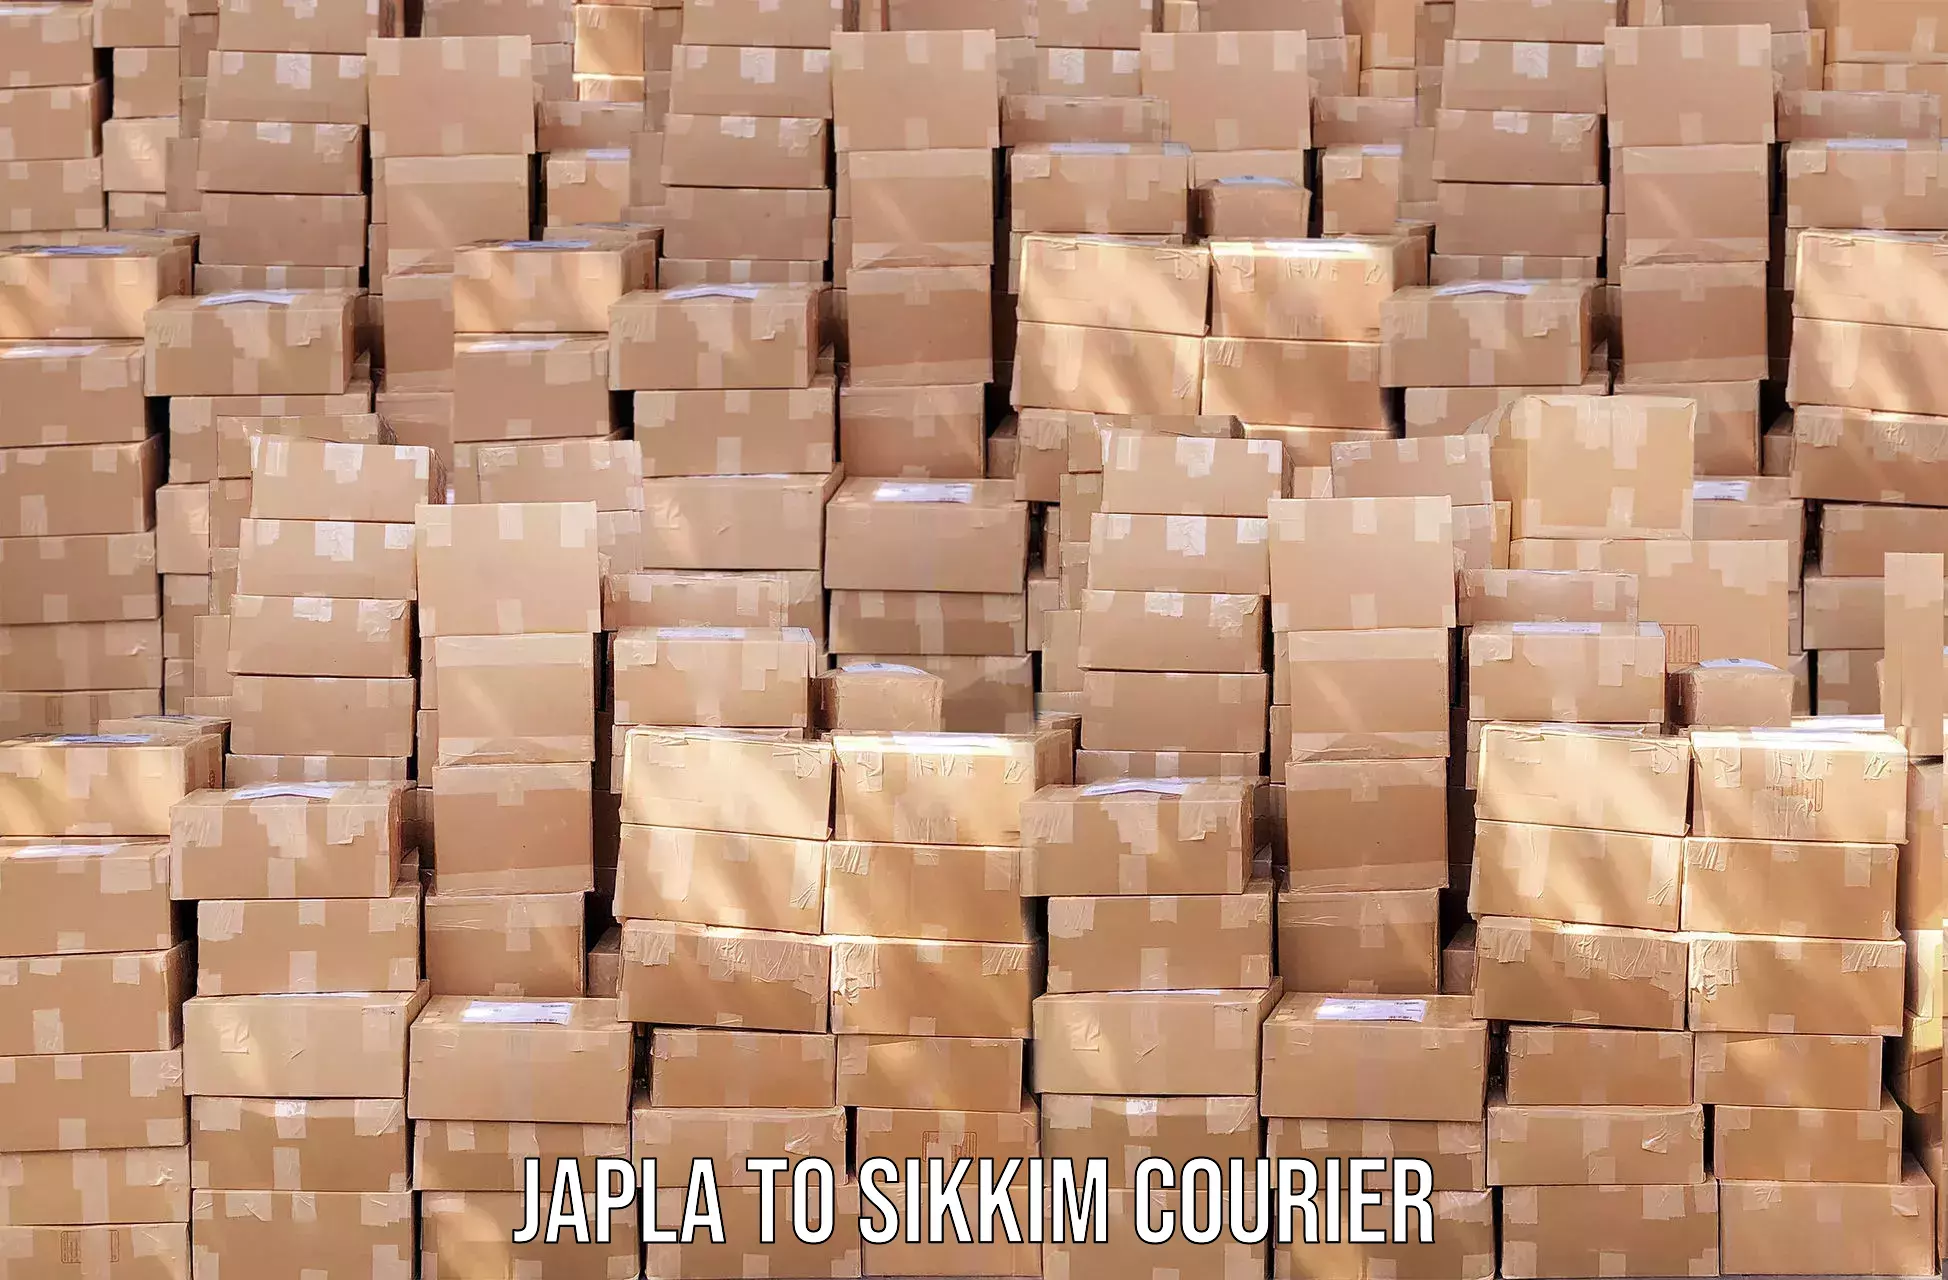 Doorstep delivery service Japla to Sikkim